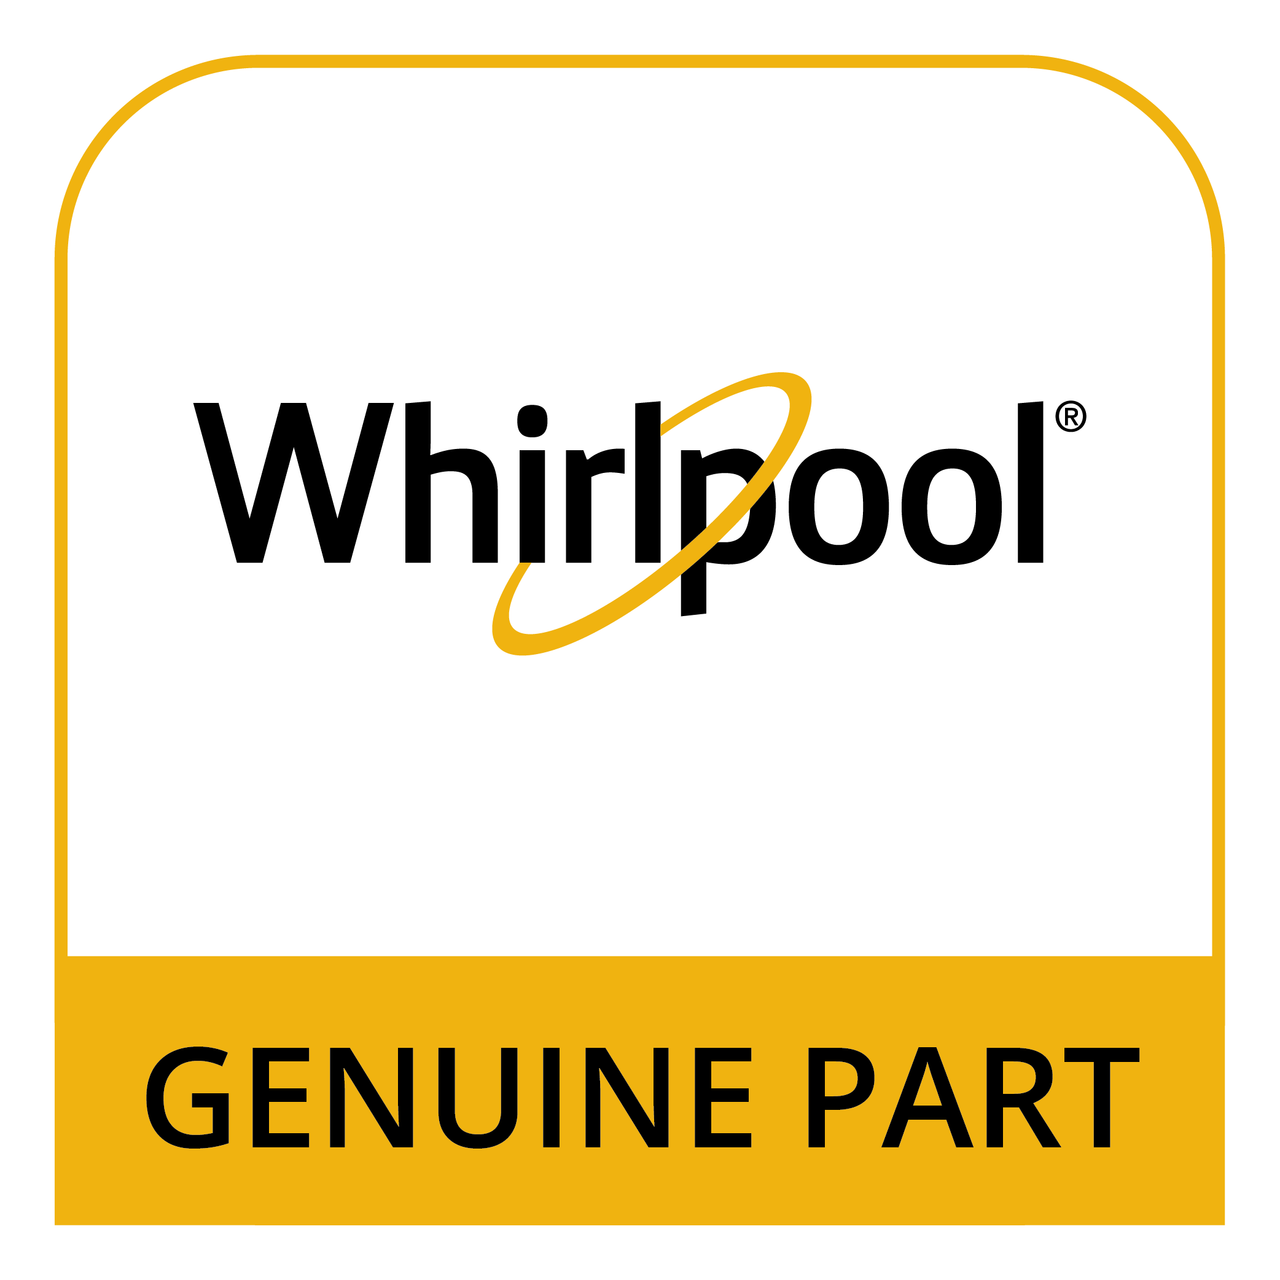 Whirlpool WFR803385 - 208-240/1 *Non-Wise* - Genuine Part